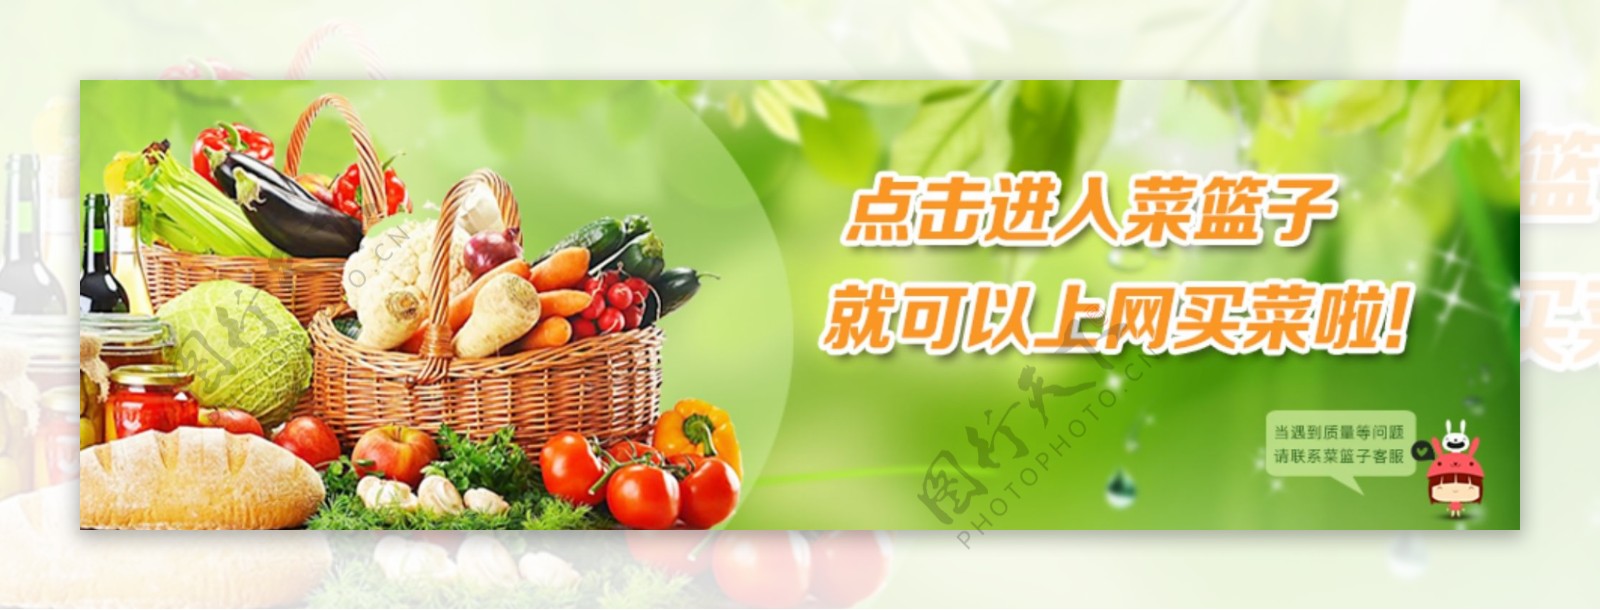 蔬菜水果banner